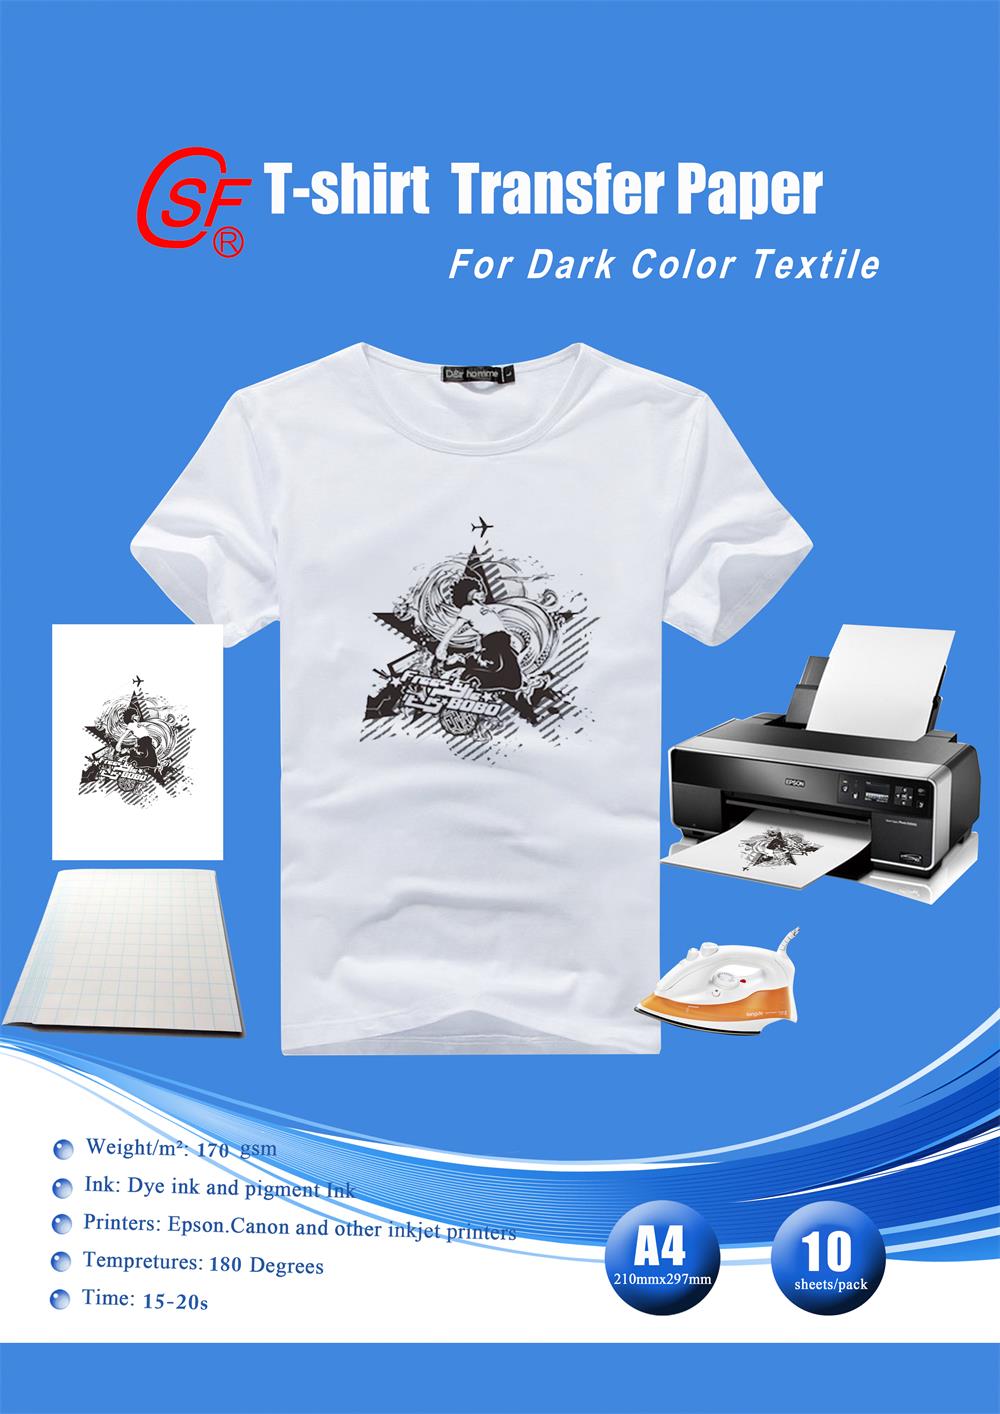 Papel de transferencia de camiseta ligero para inyección de tinta